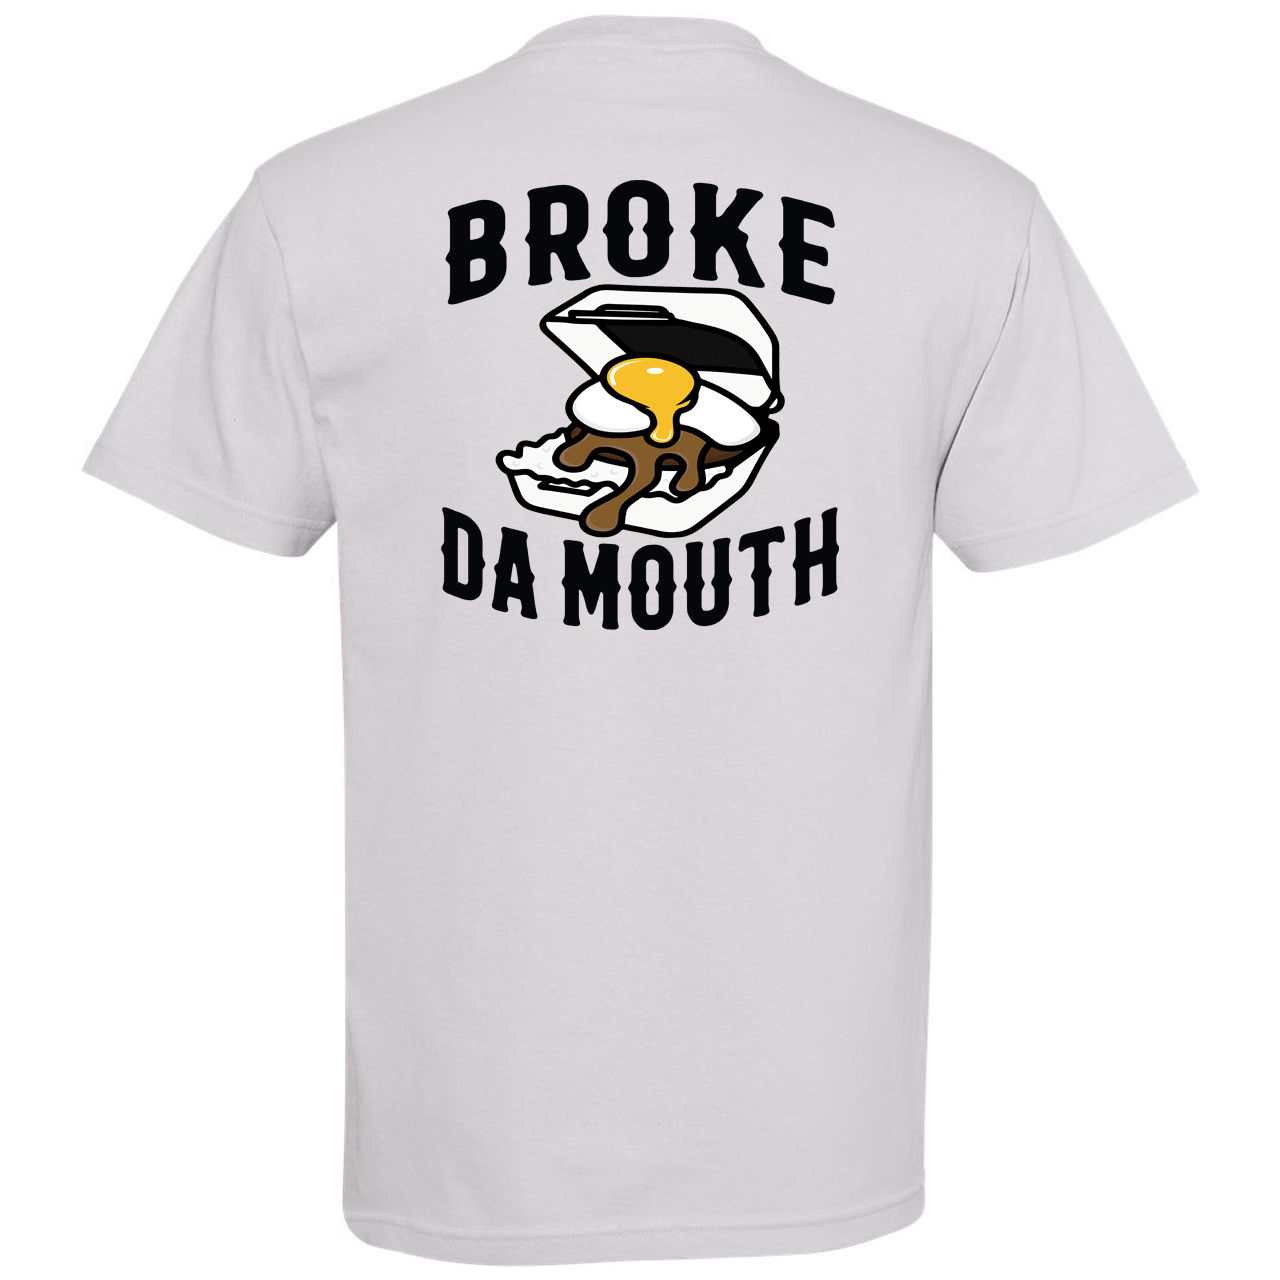 Broke Da Mouth